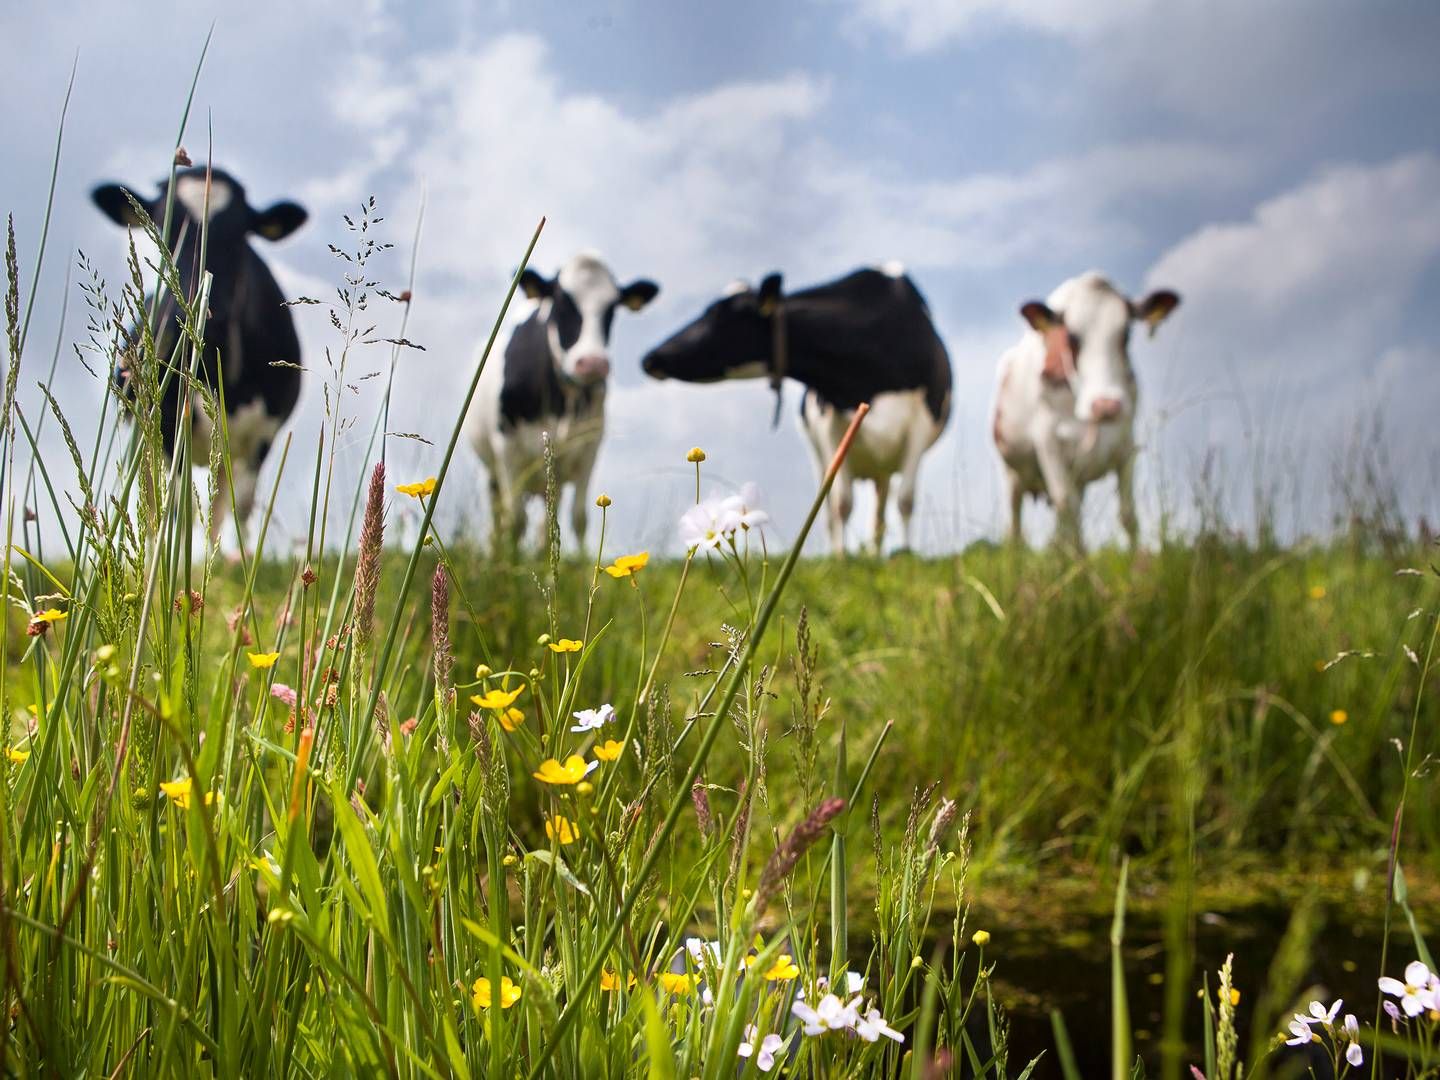 Landbruget står samlet set for en betydelig del af verdens drivhusgasemissioner — omkring 30 pct. | Foto: Frieslandcampina/ Pr